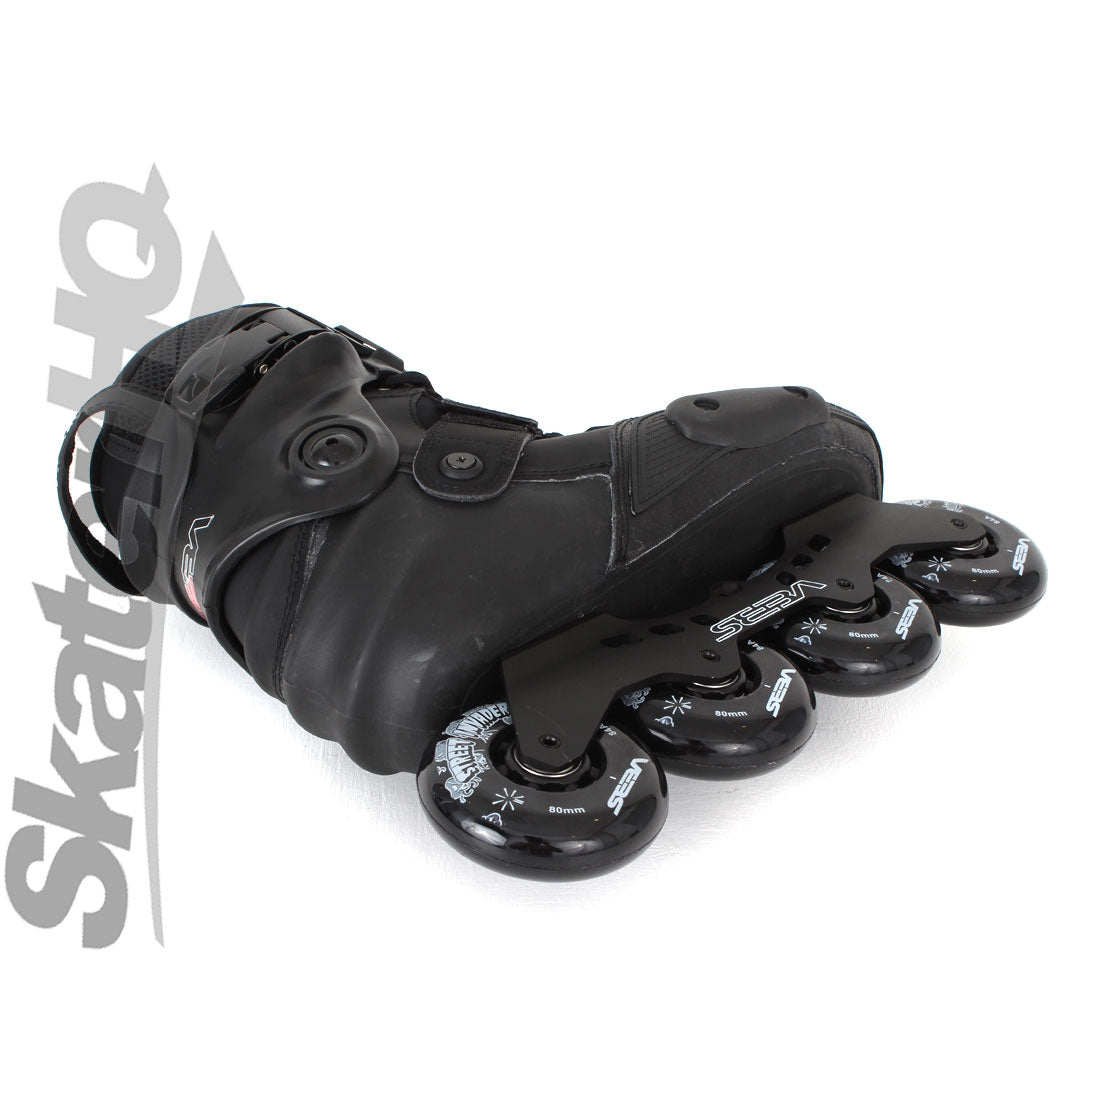 SEBA SX2 Black 9US/EU43 Inline Rec Skates